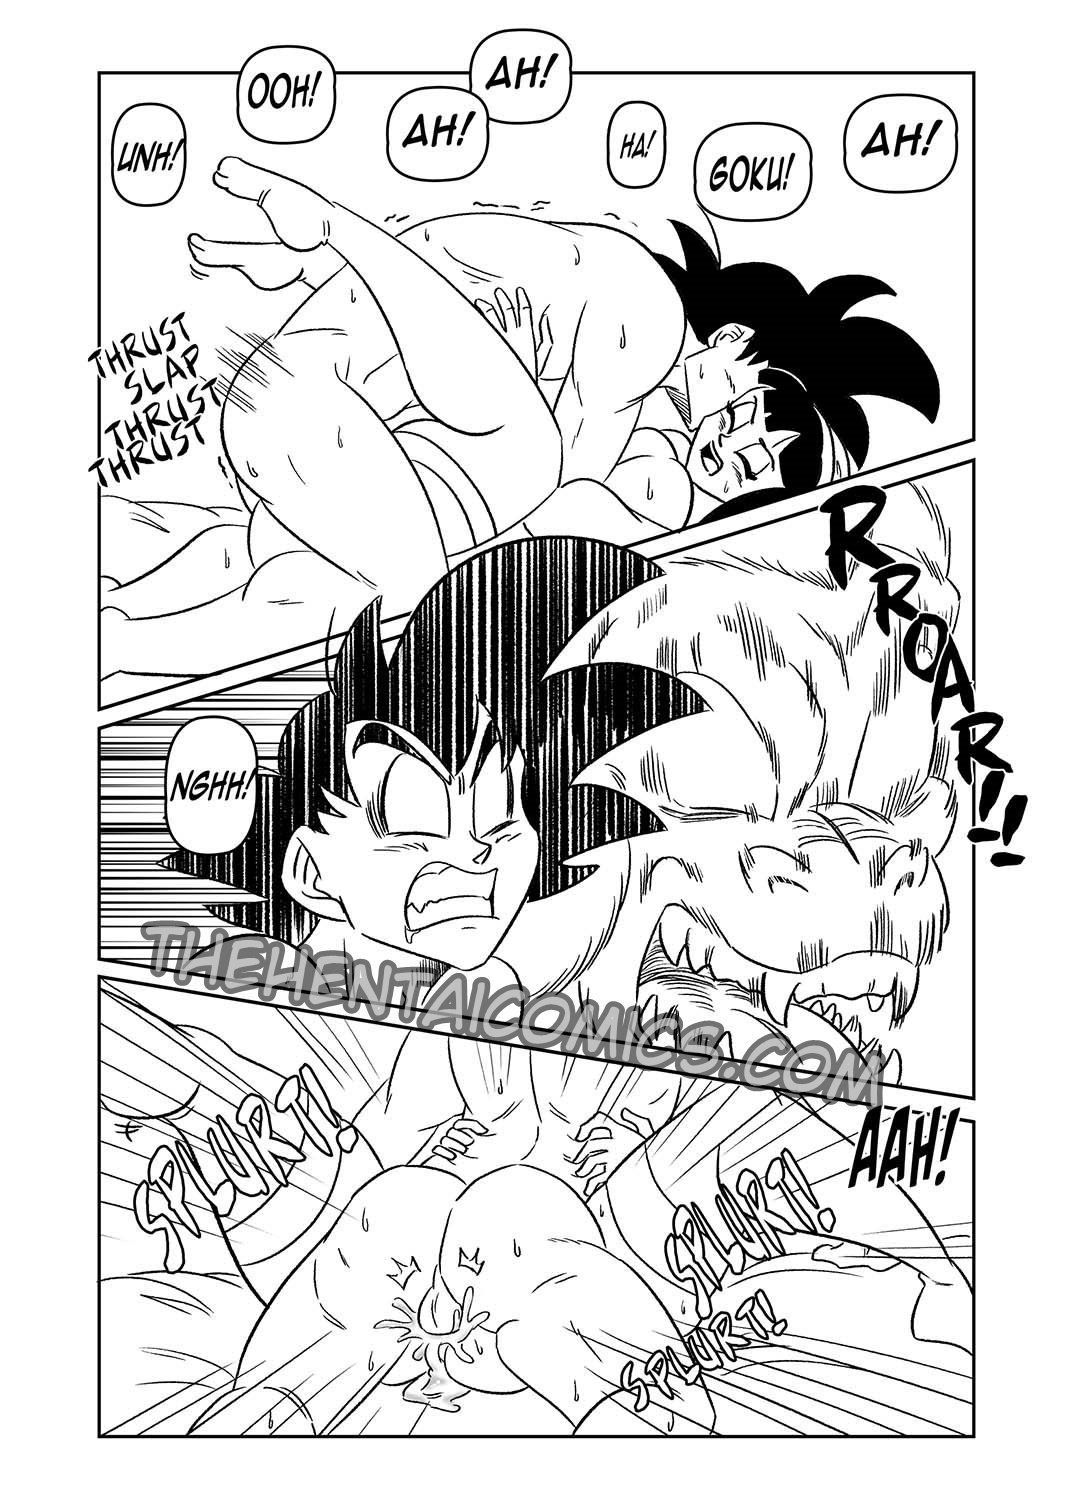 Quadrinhos Eroticos - Goku e Chichi em lua de mel - DBZ Hentai